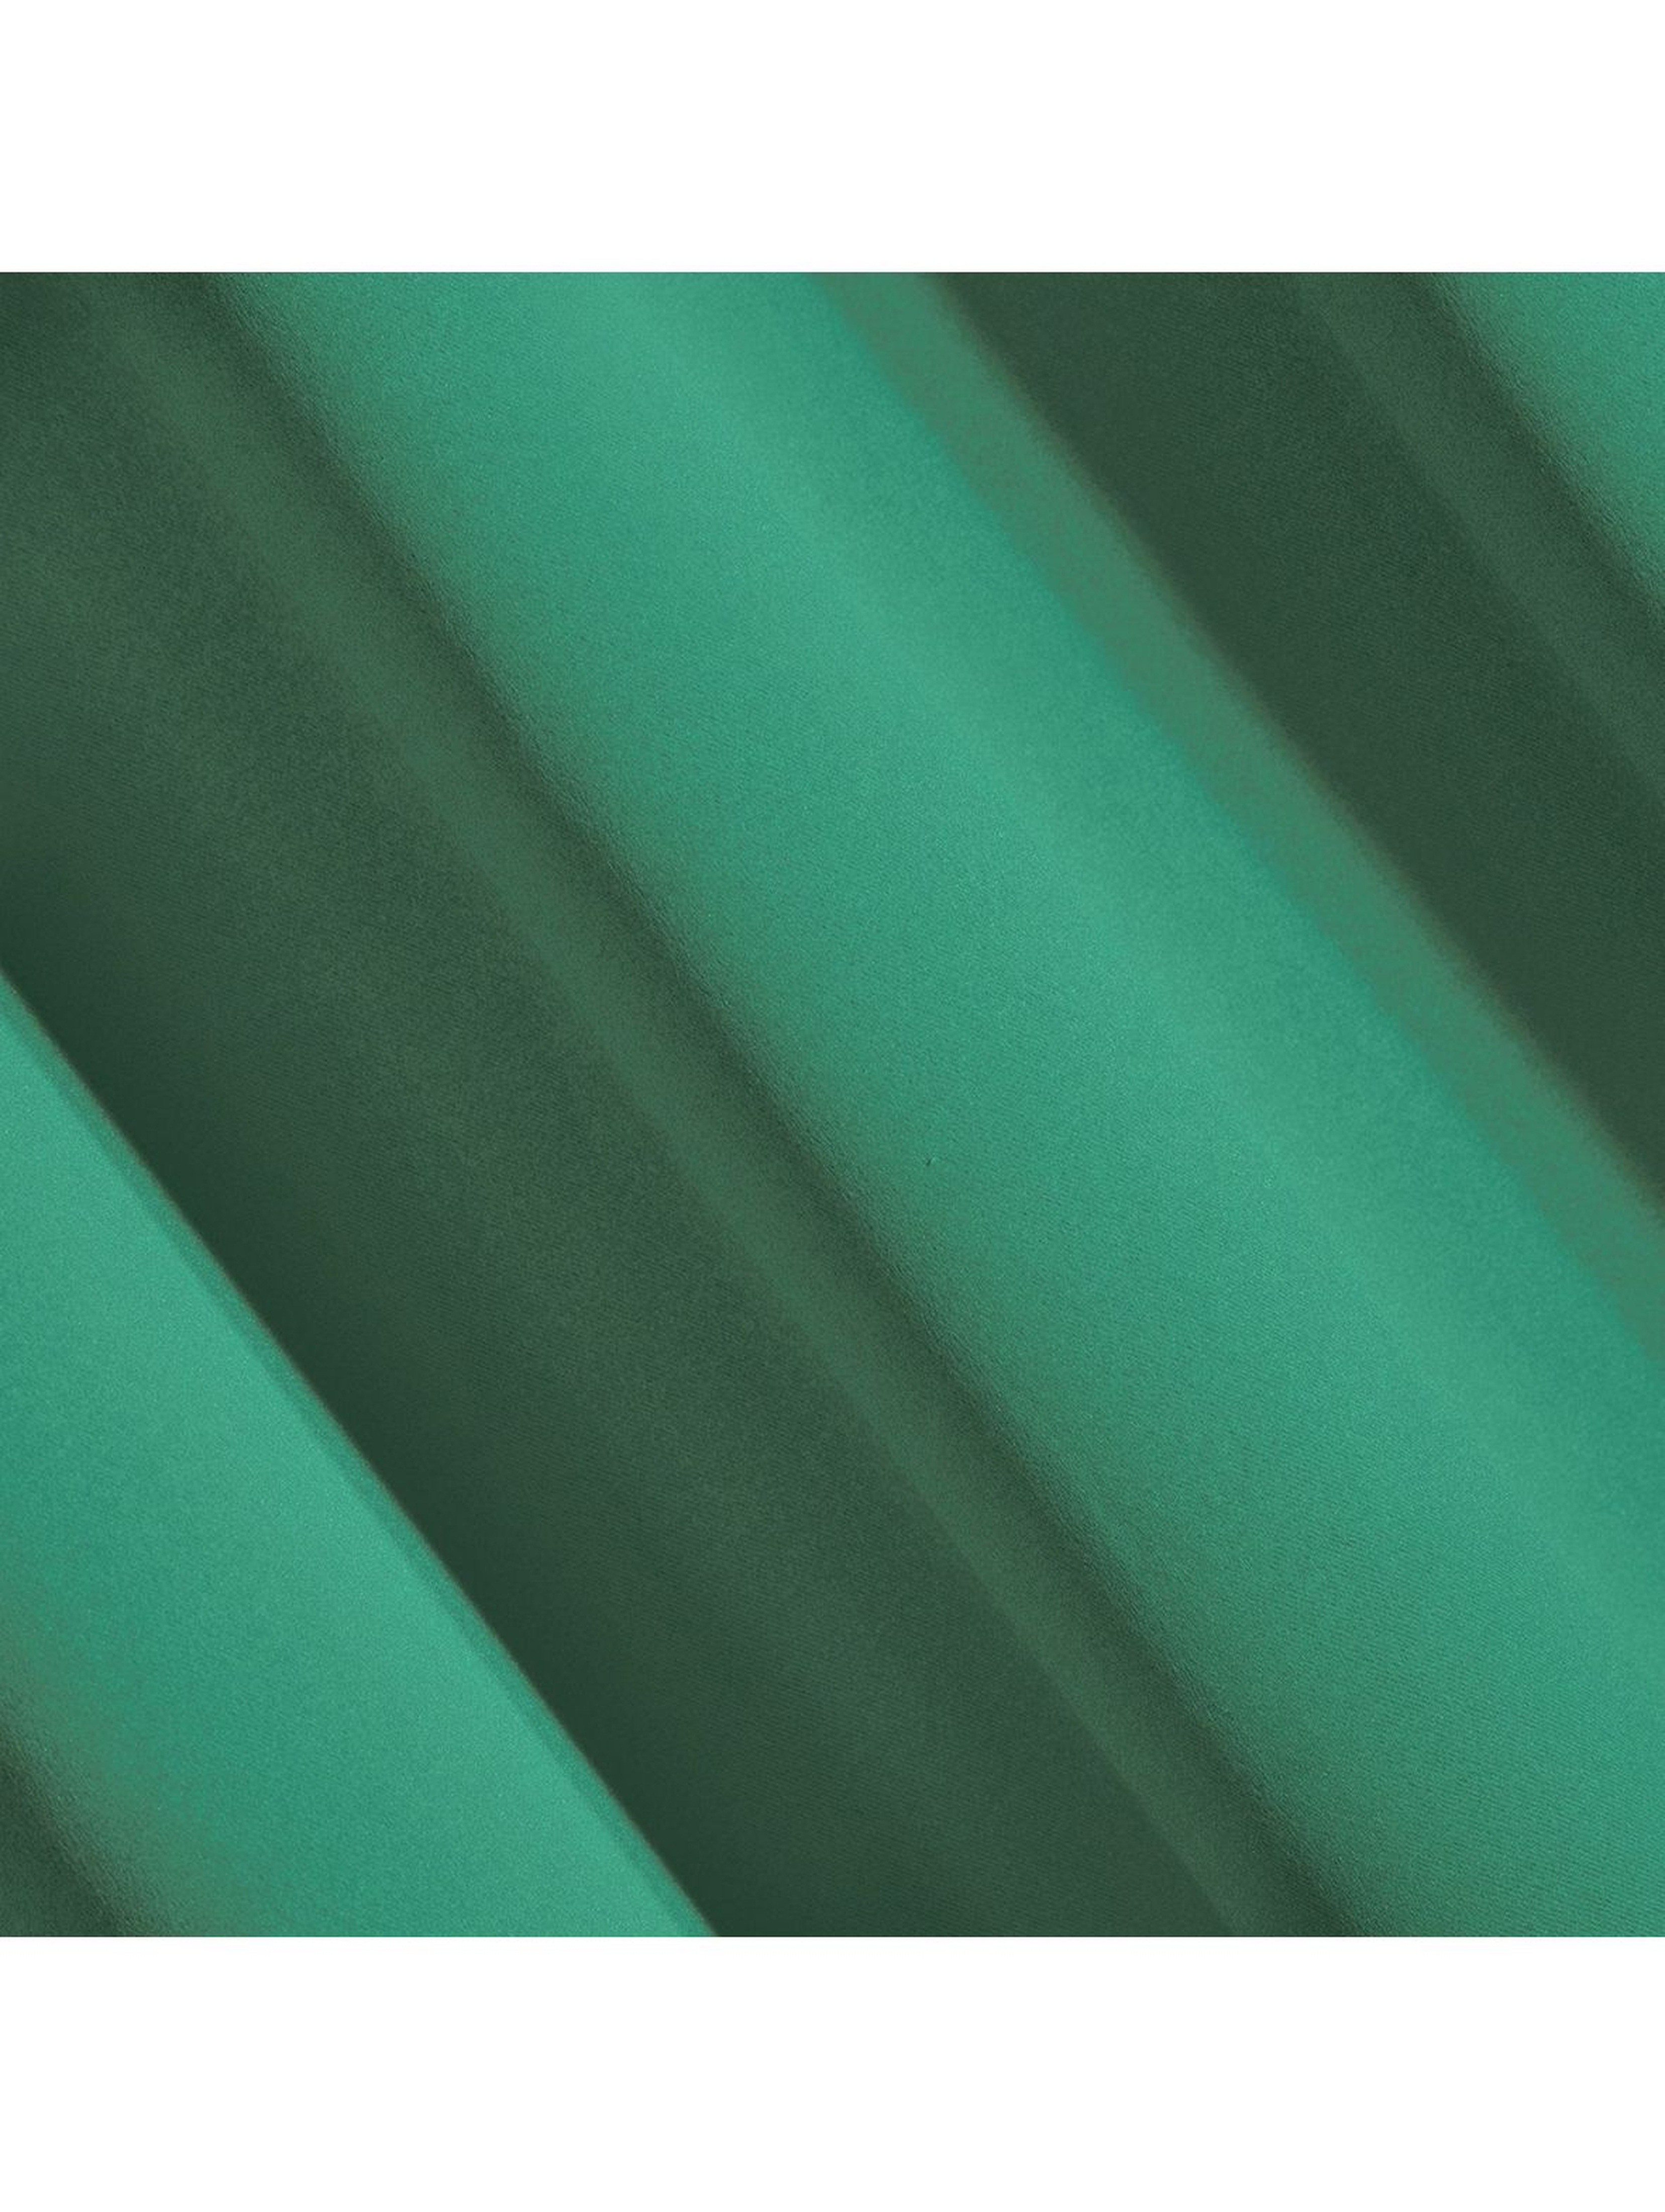 Zasłona zaciemniająca jednokolorowa - zielona - 135x250cm